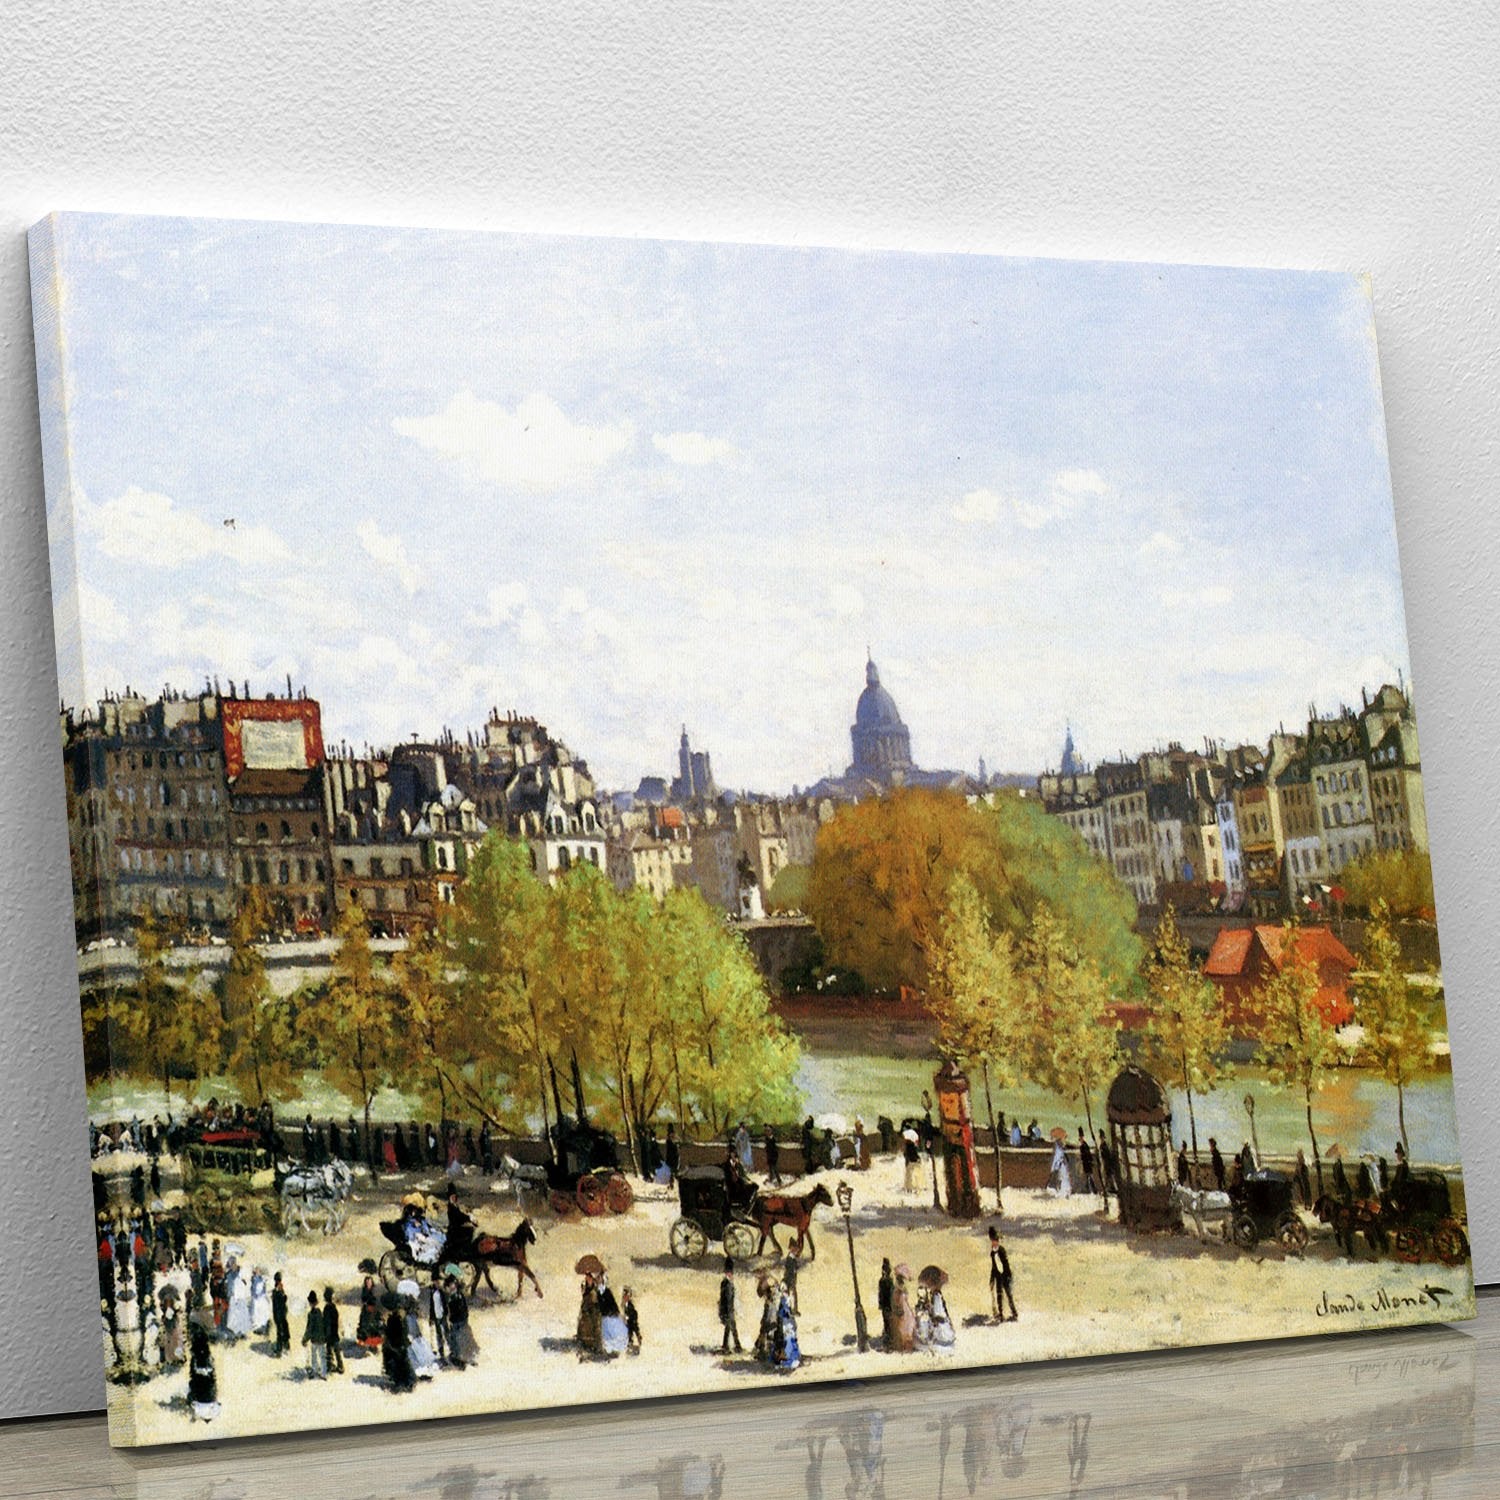 Le quai du Louvre by Monet Canvas Print or Poster